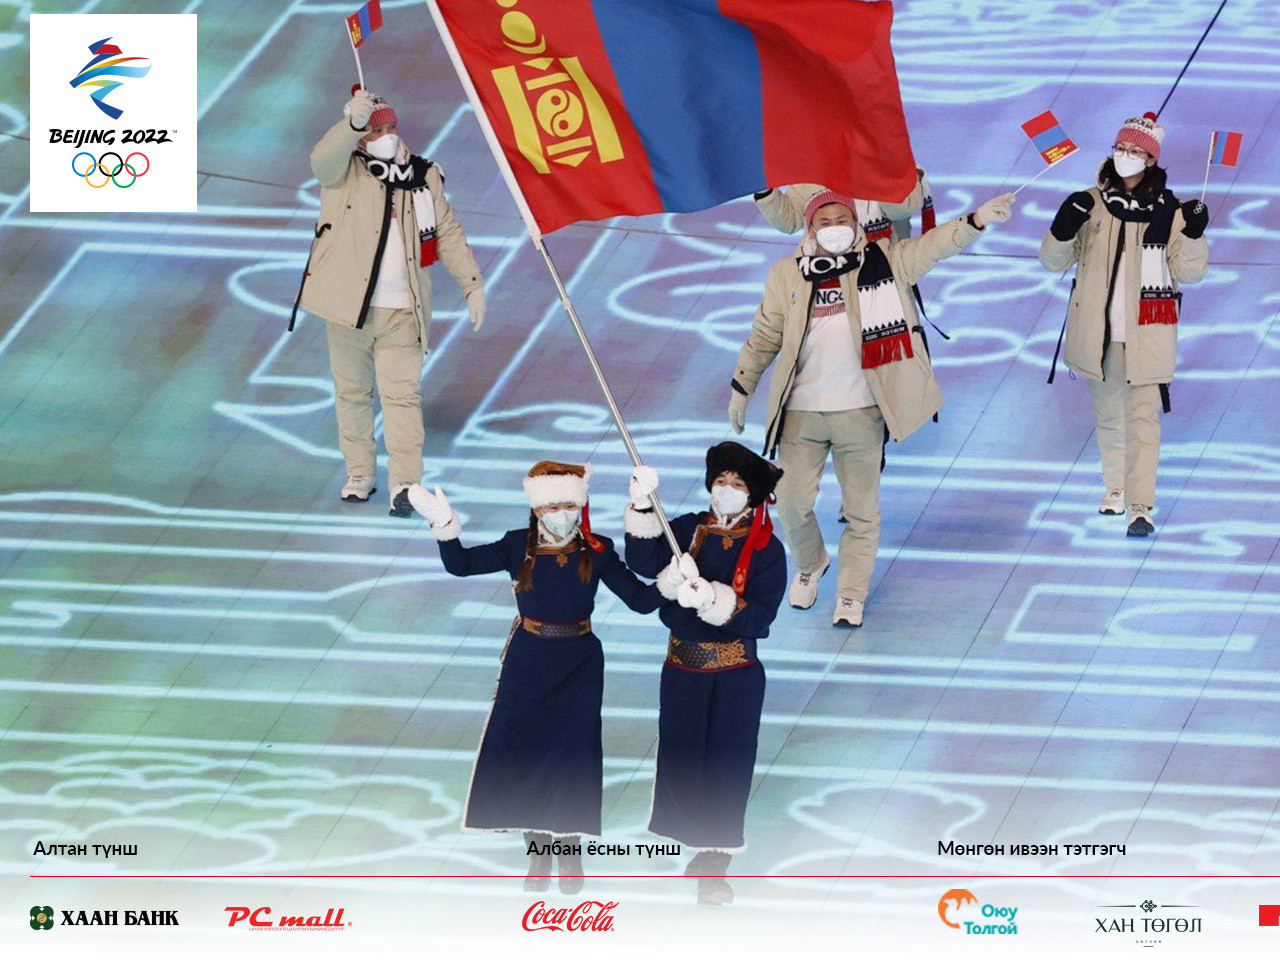 Монголын багийн хувцас шилдэг дөрөвт нэрлэгджээ